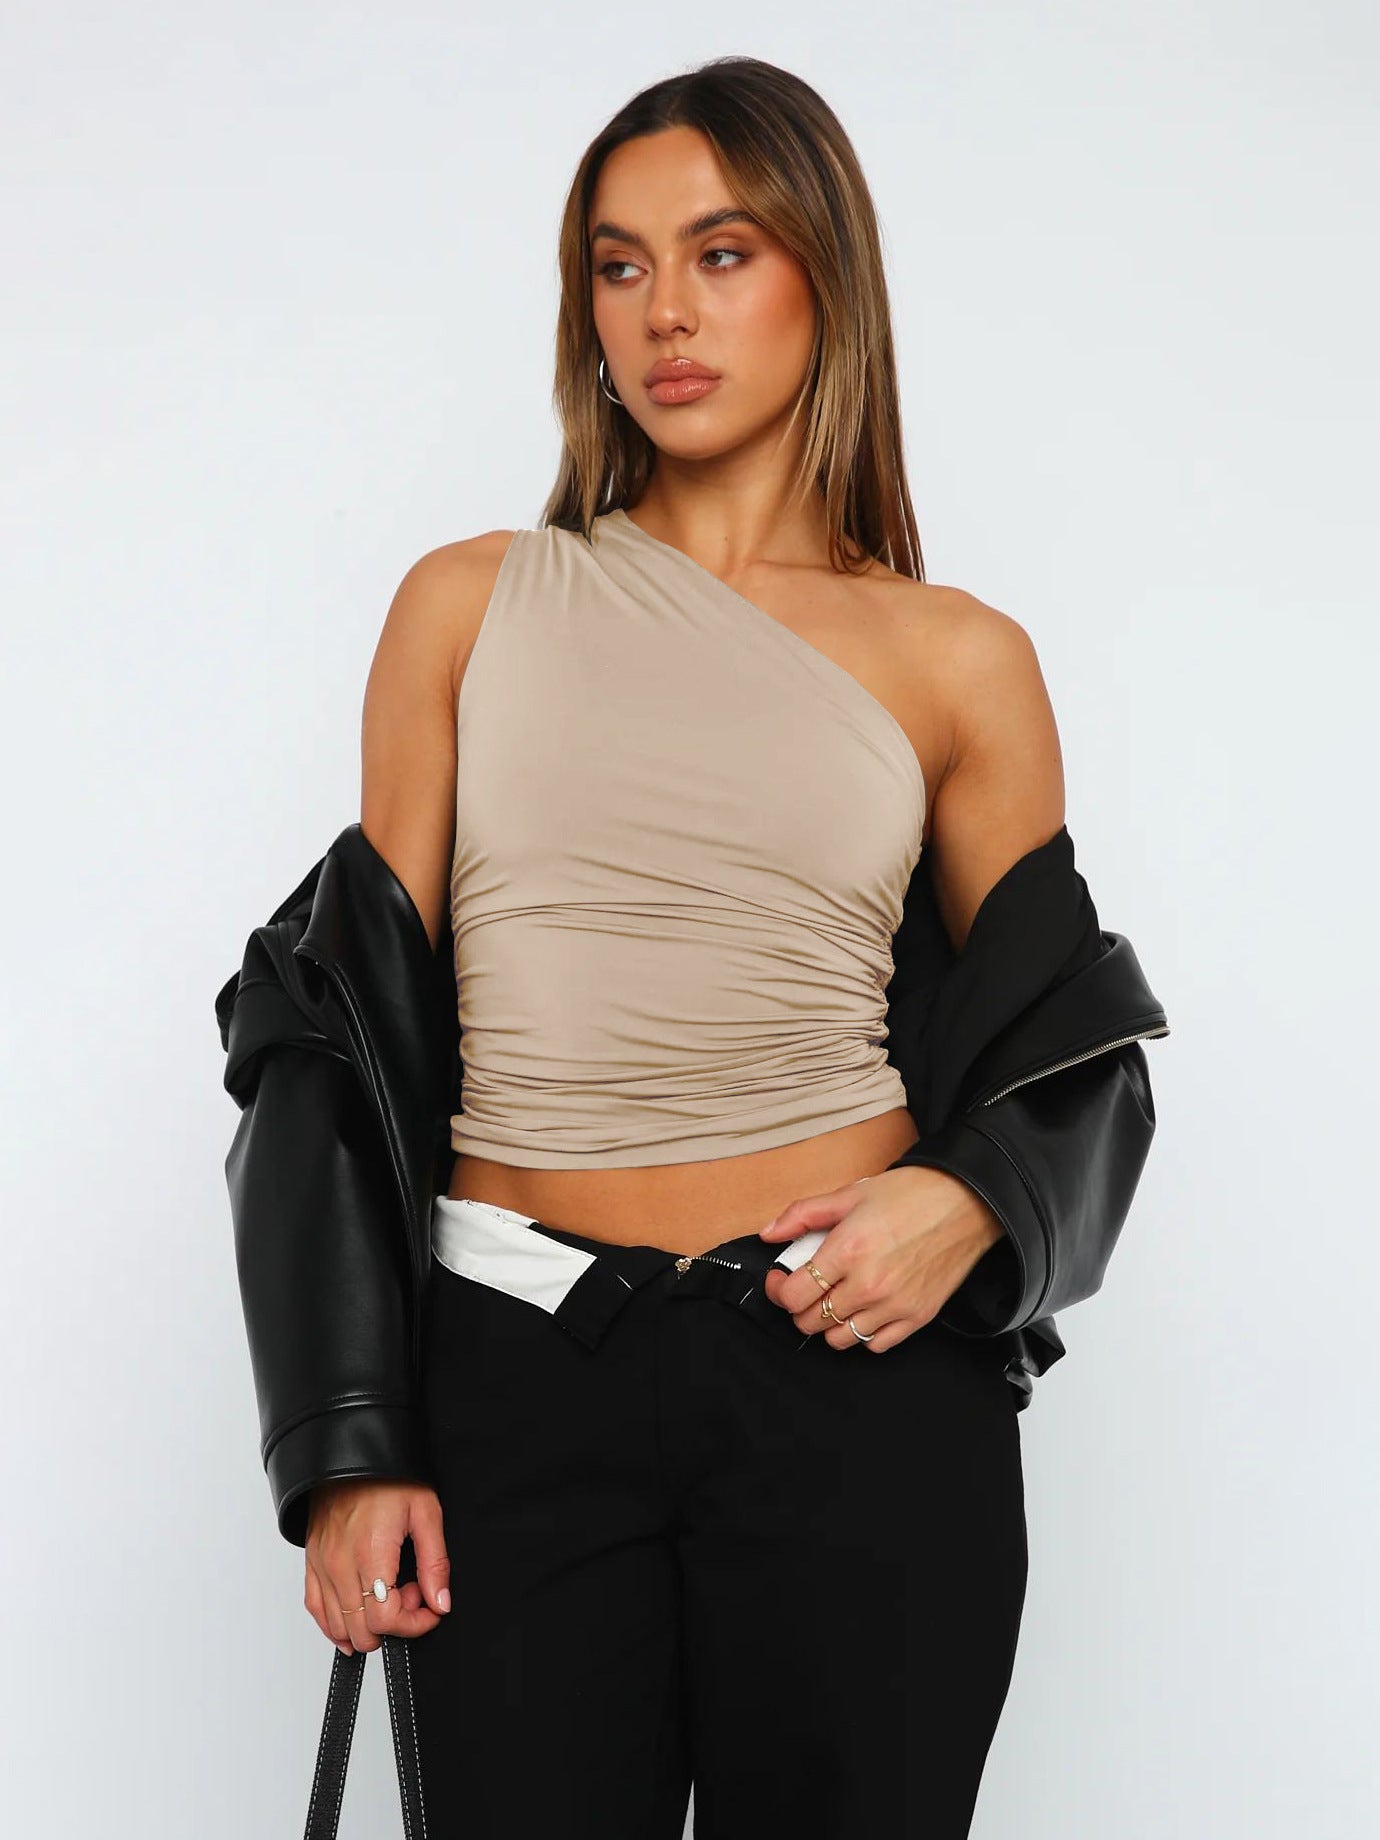 Women's Hot Shoulder Sleeveless Sexy T-shirt Design Blouses